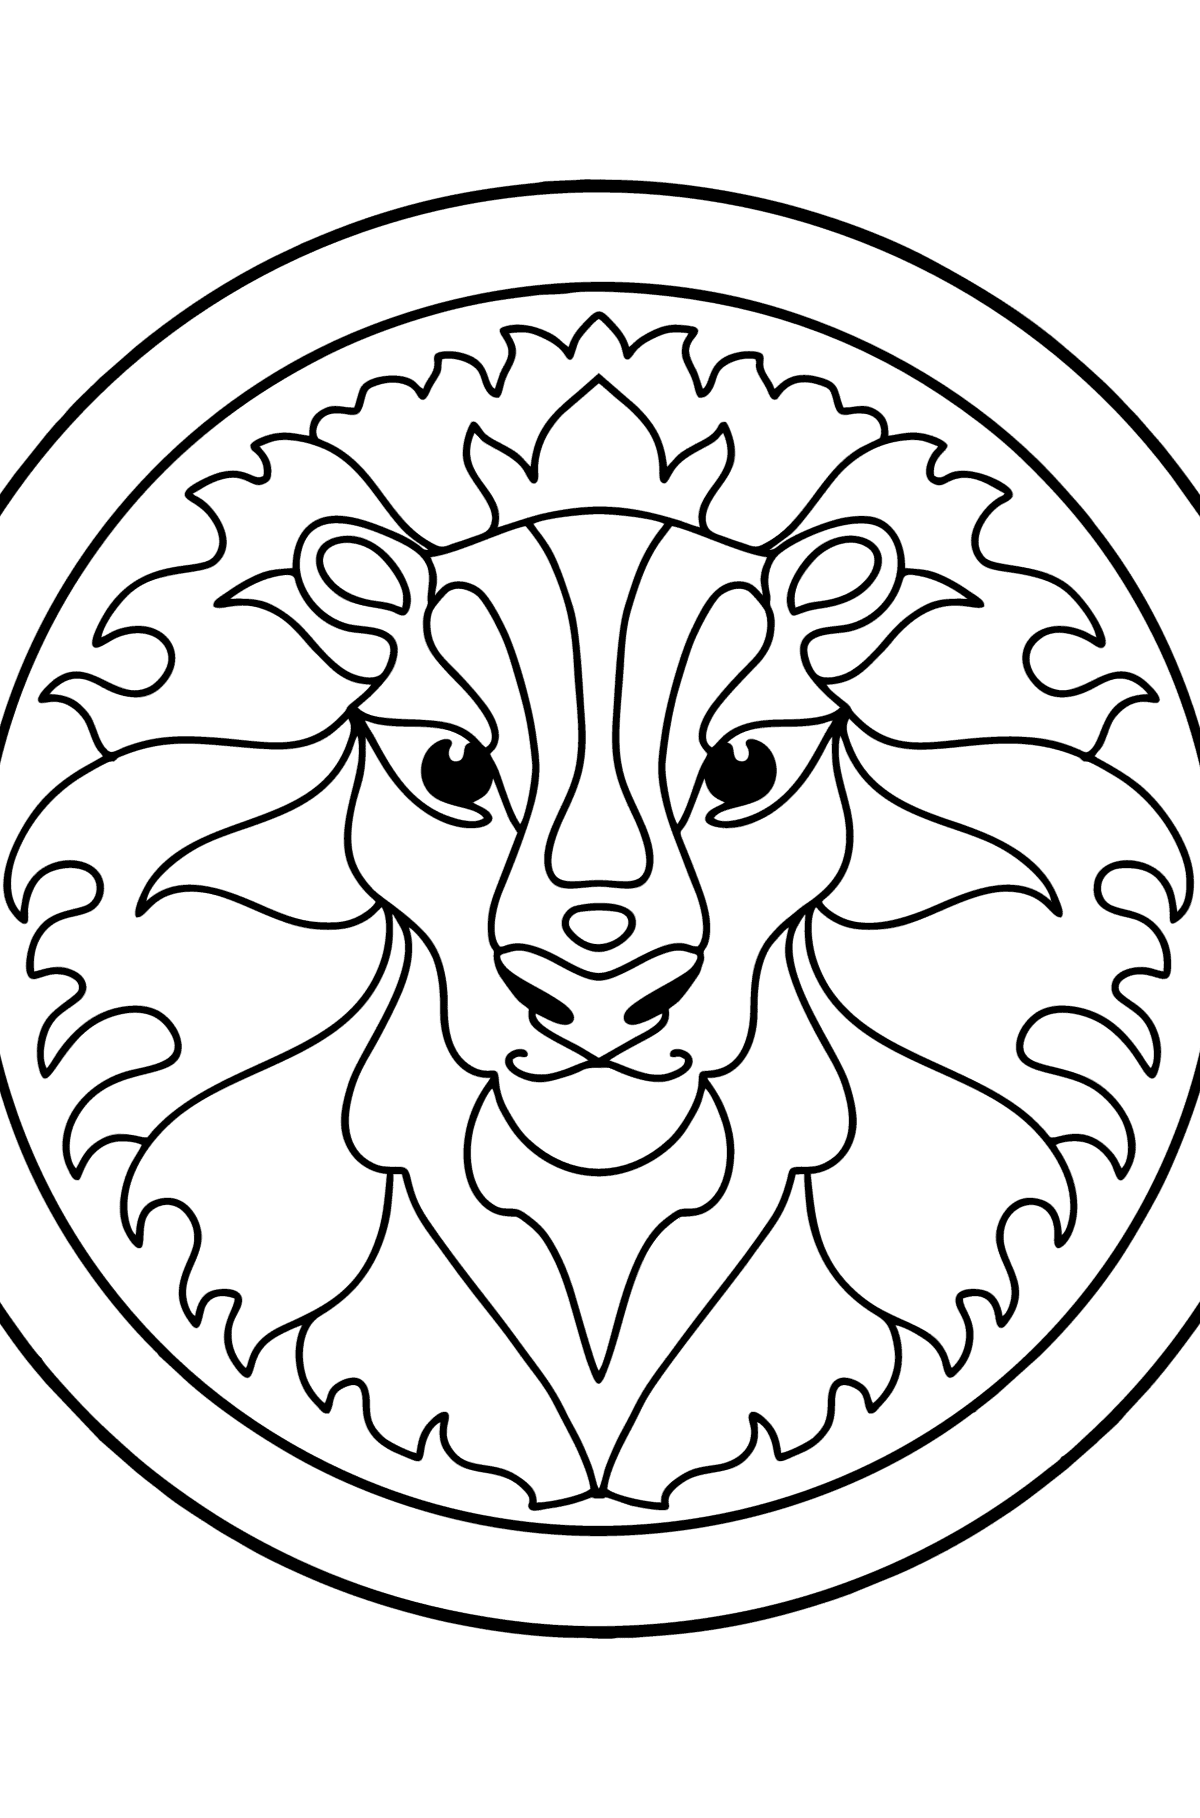 Раскраска знак зодиака Лев для детей - Картинки для Детей